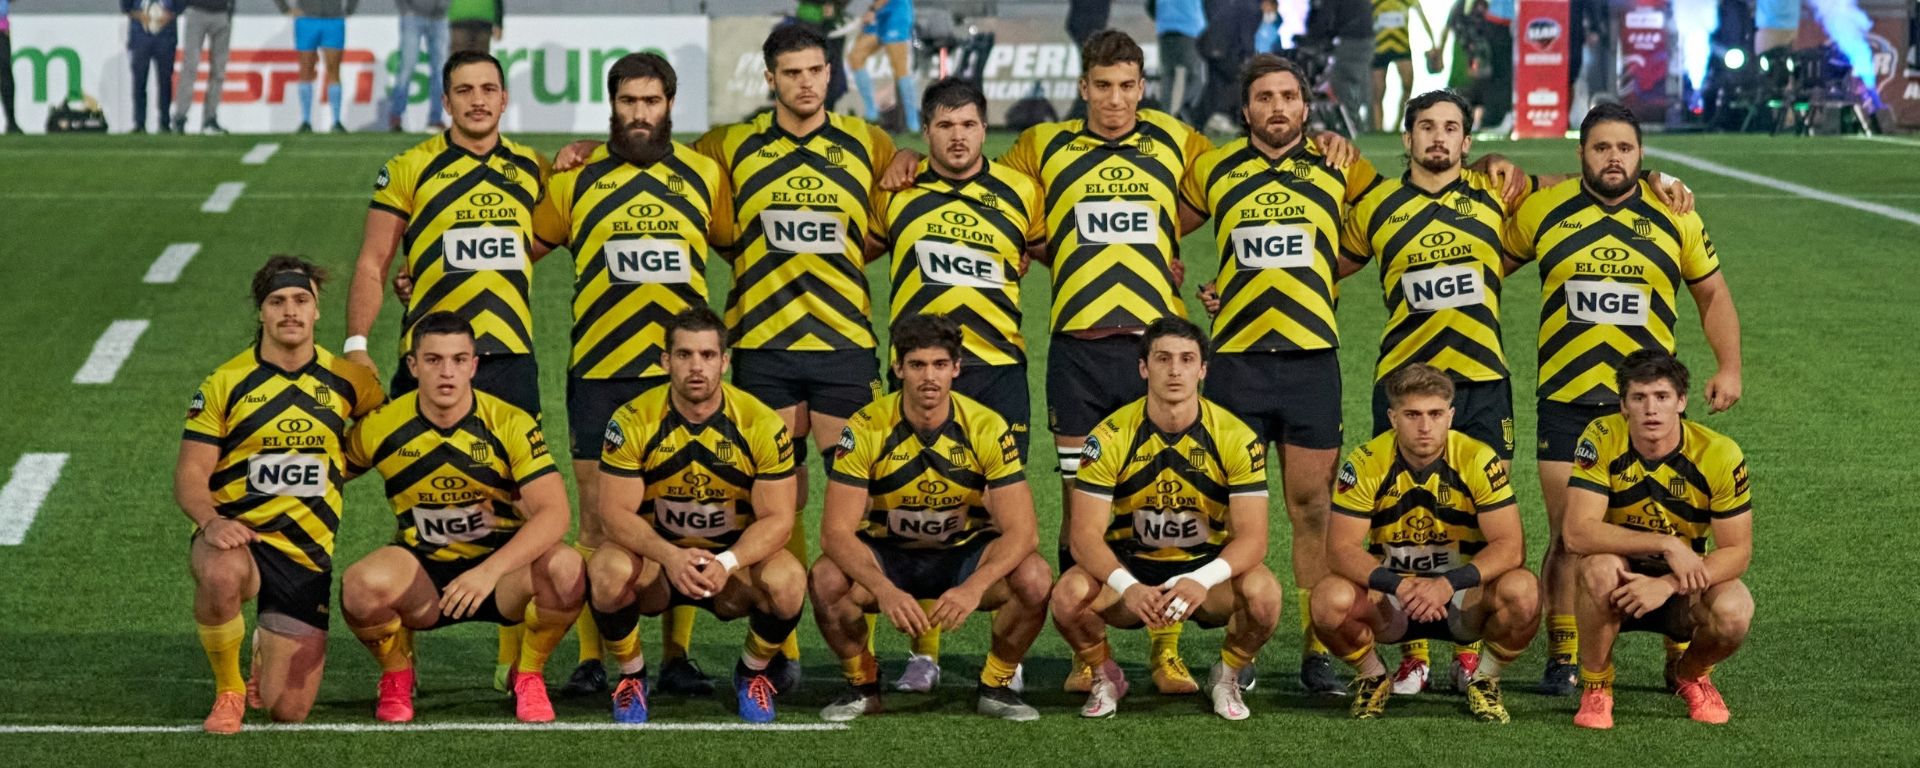 Plantel del Peñarol Rugby